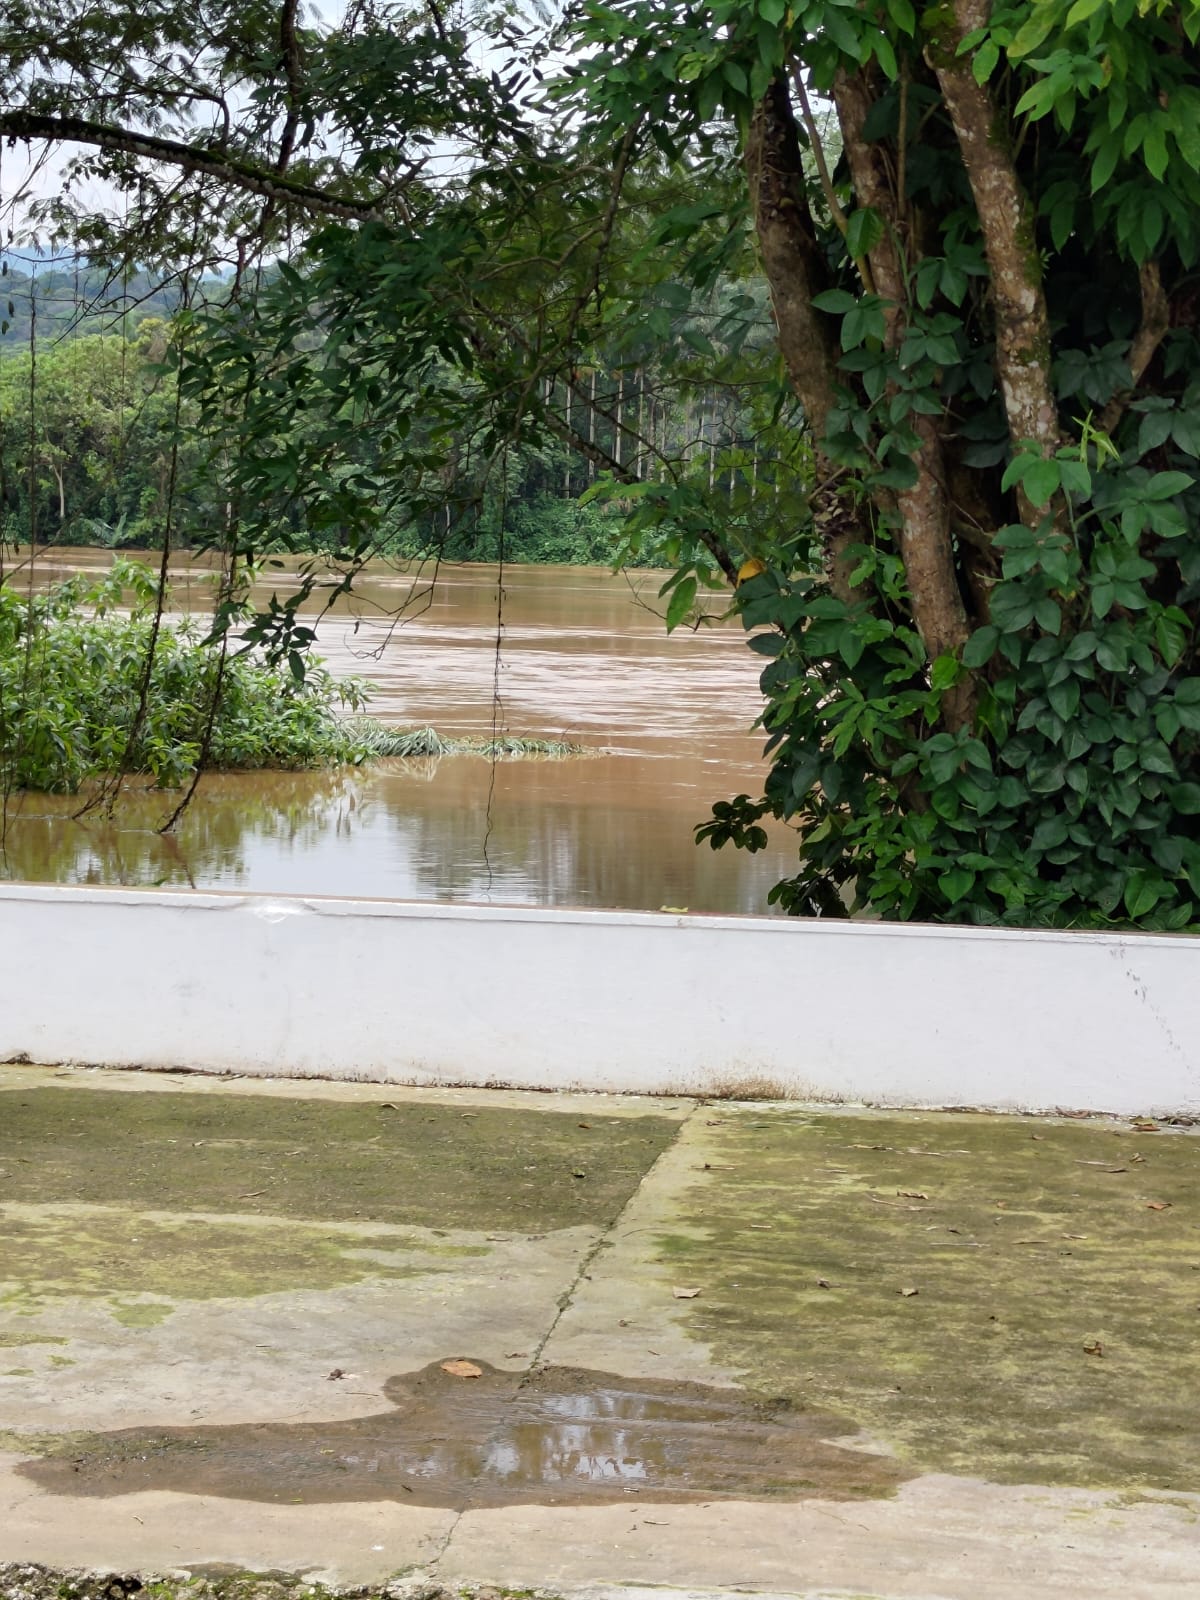 Margem do rio se aproxima da via no município|Frederico Viegas/ISA